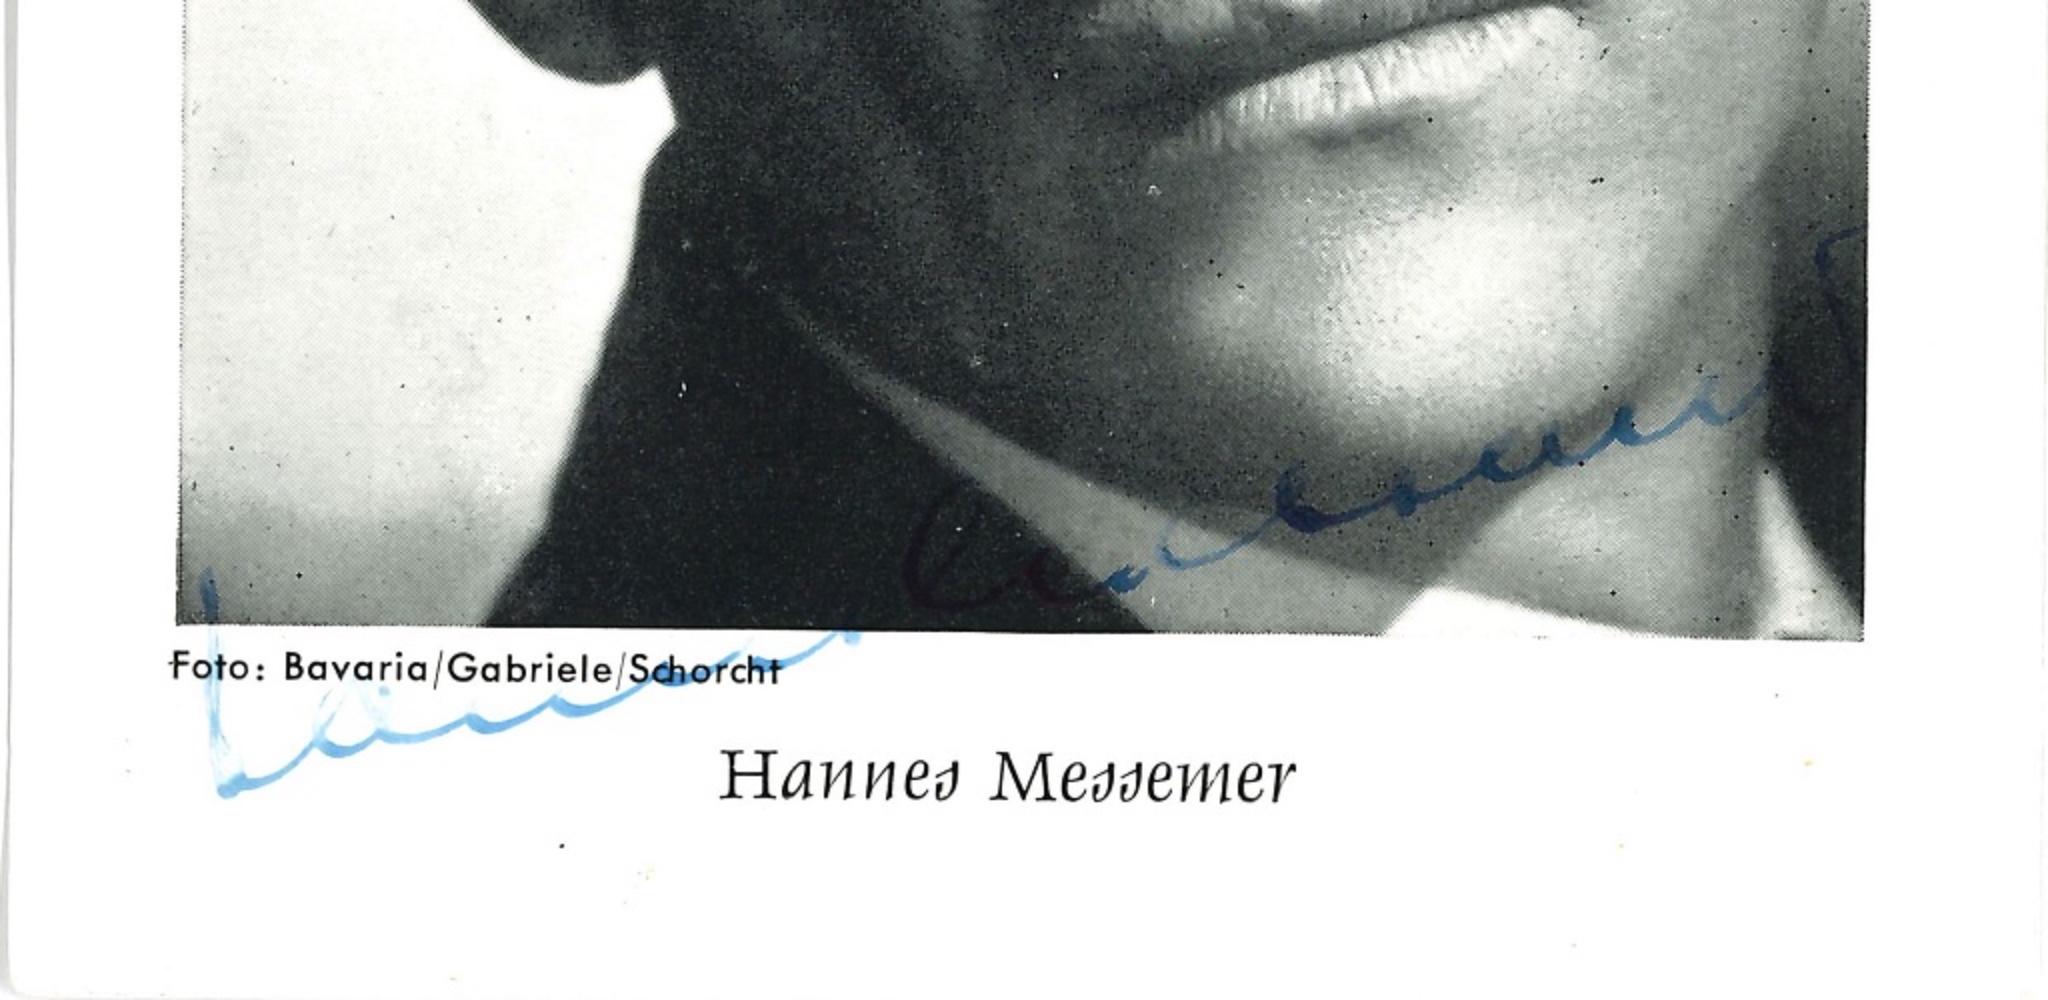 Hannes Messemer's Autographed Portrait - 1960s - Photograph by Unknown